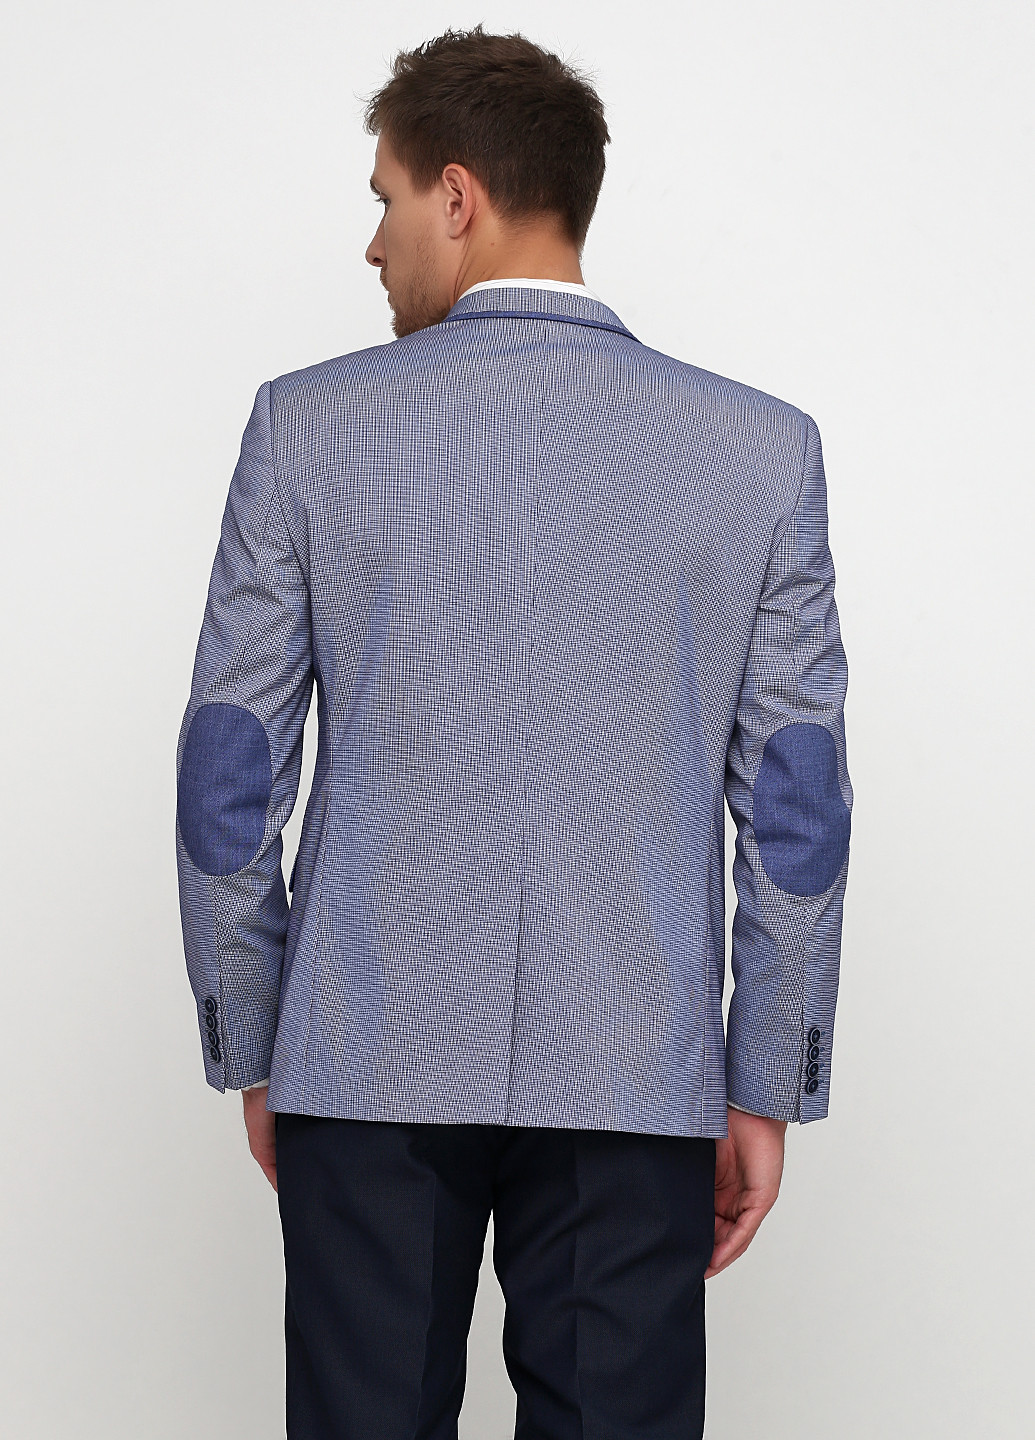 Пиджак Federico Cavallini с длинным рукавом клетка голубой деловой